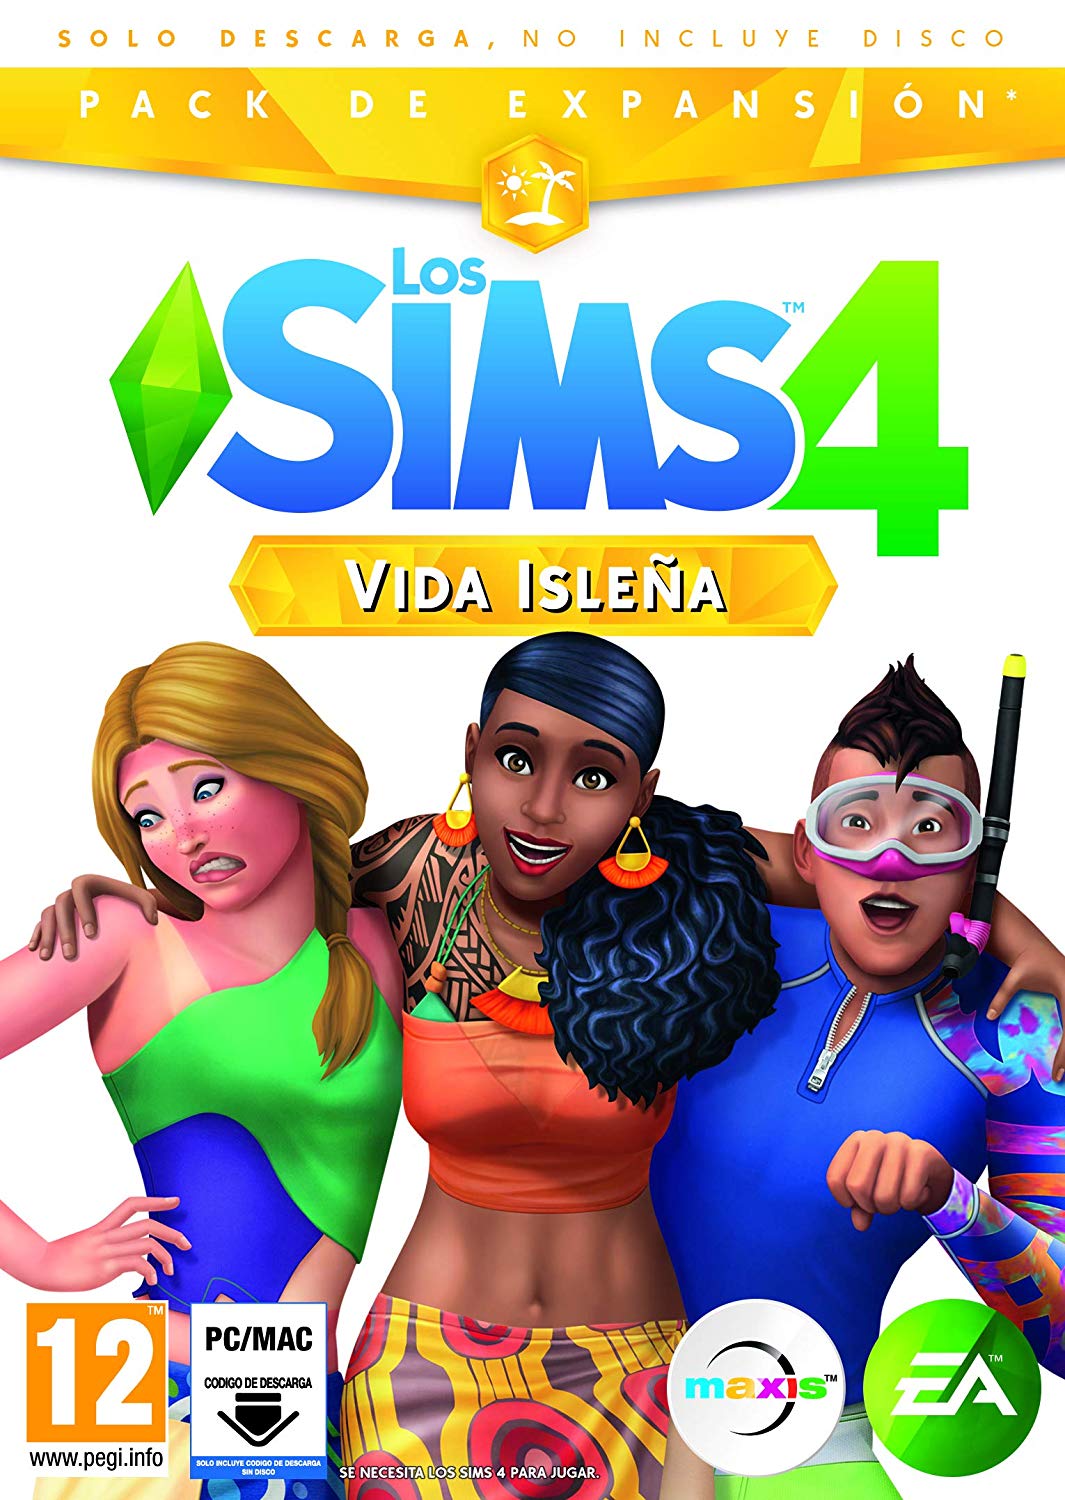 Los Sims 4 - Vida Isleña